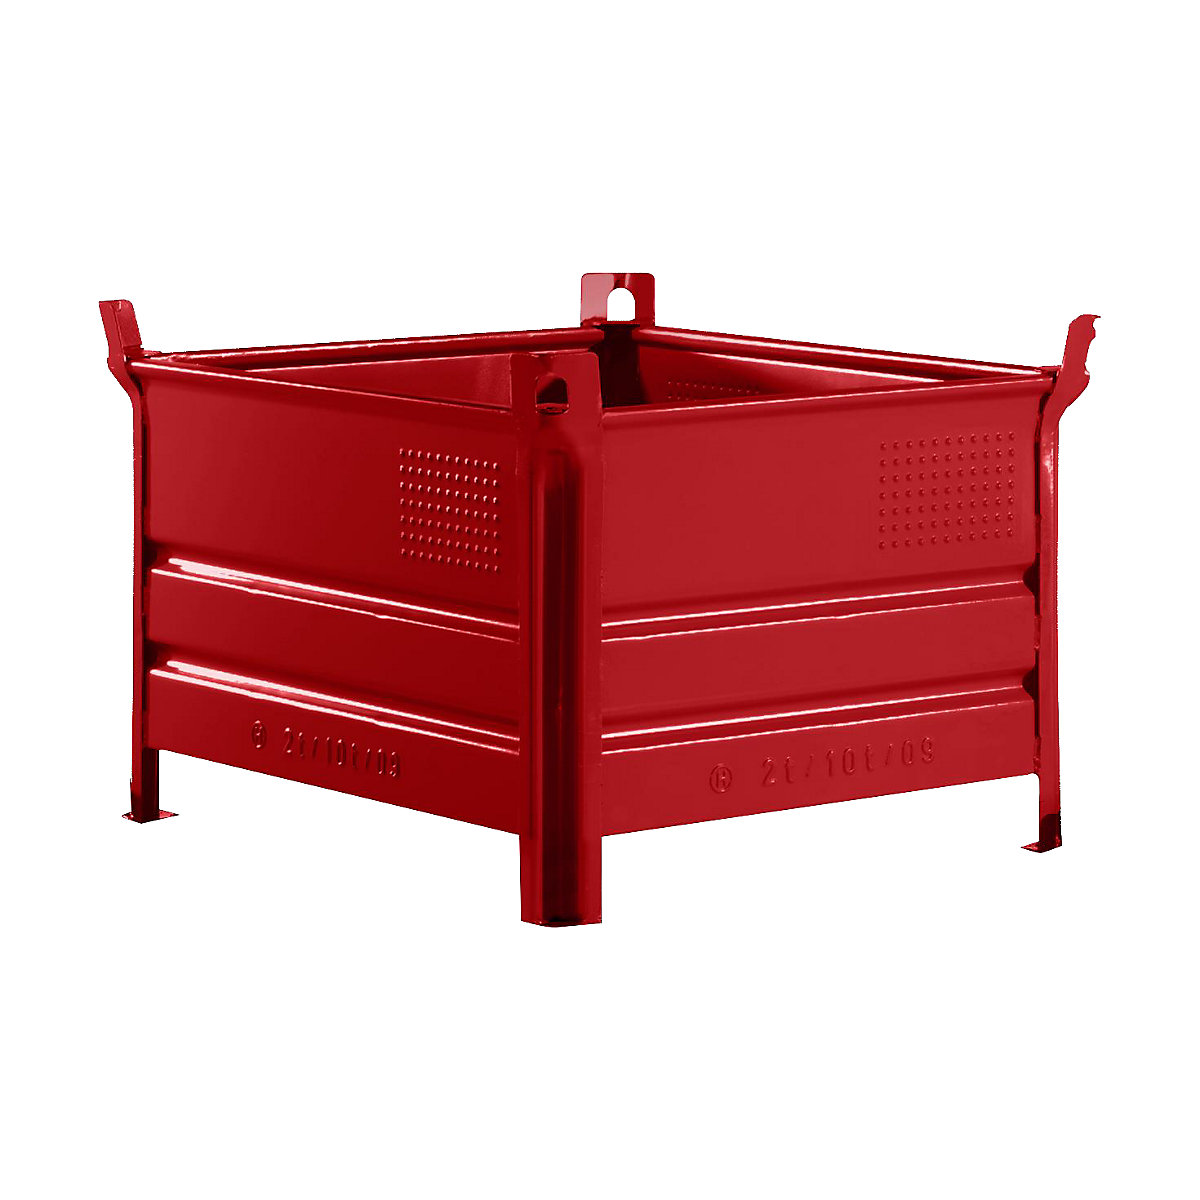 Stohovací přepravka s plnými stěnami – Heson, š x d 800 x 1000 mm, nosnost 1000 kg, červená, od 10 ks-6